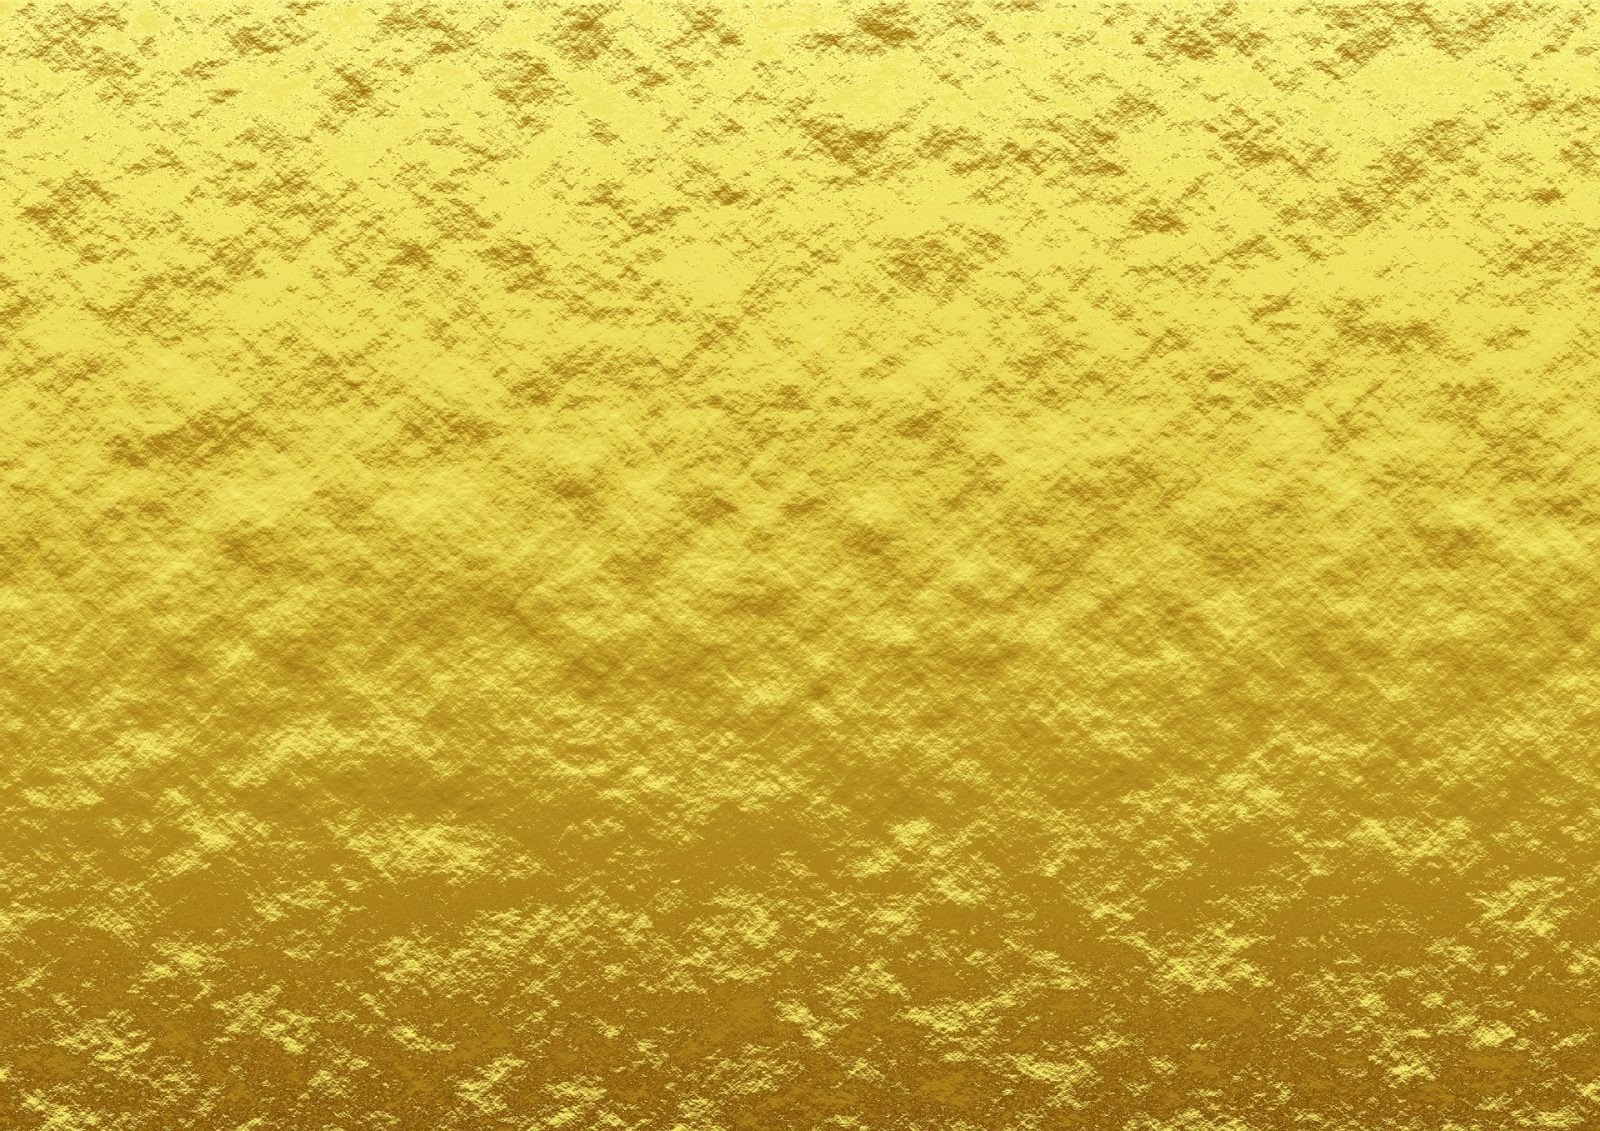 Stosowanie złota w średniowieczu było za drogie, dlatego rzemieślnicy wymyślili inny materiał /Fot. Pixabay
